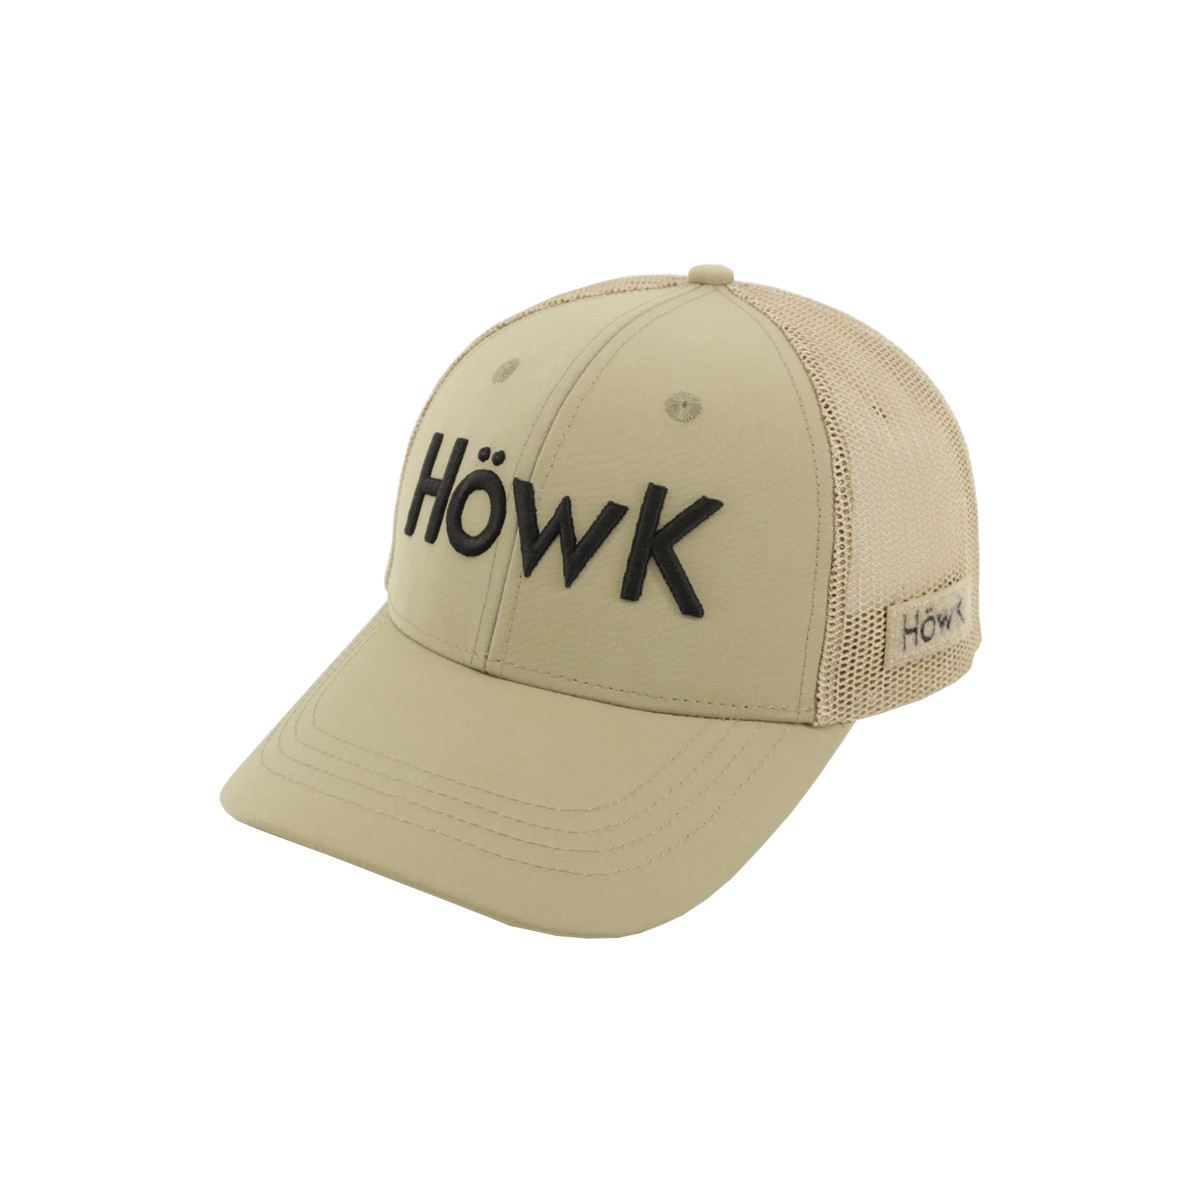 HOWK GREY ORANGE CAP